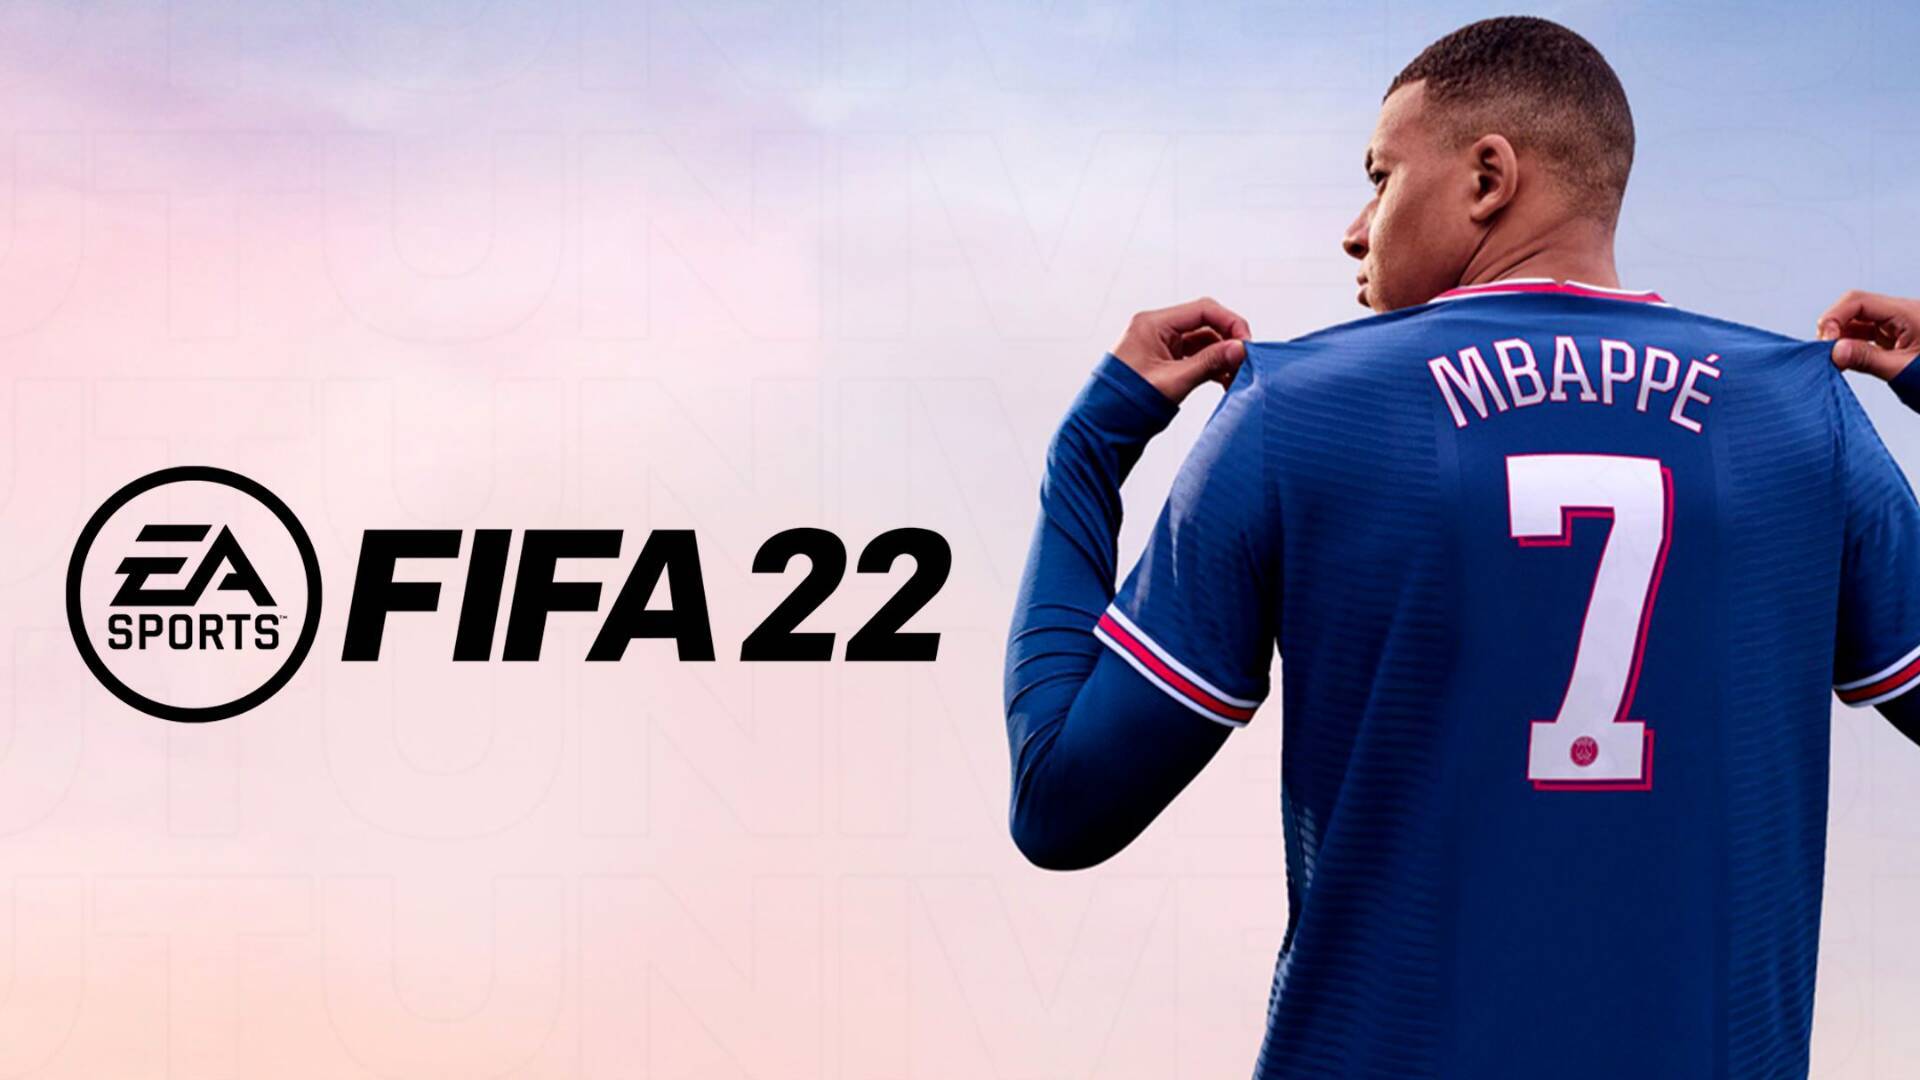 لعبة فيفا 2022 للاندرويد و الكمبيوتر FIFA 22 Mobile Android الرسمية